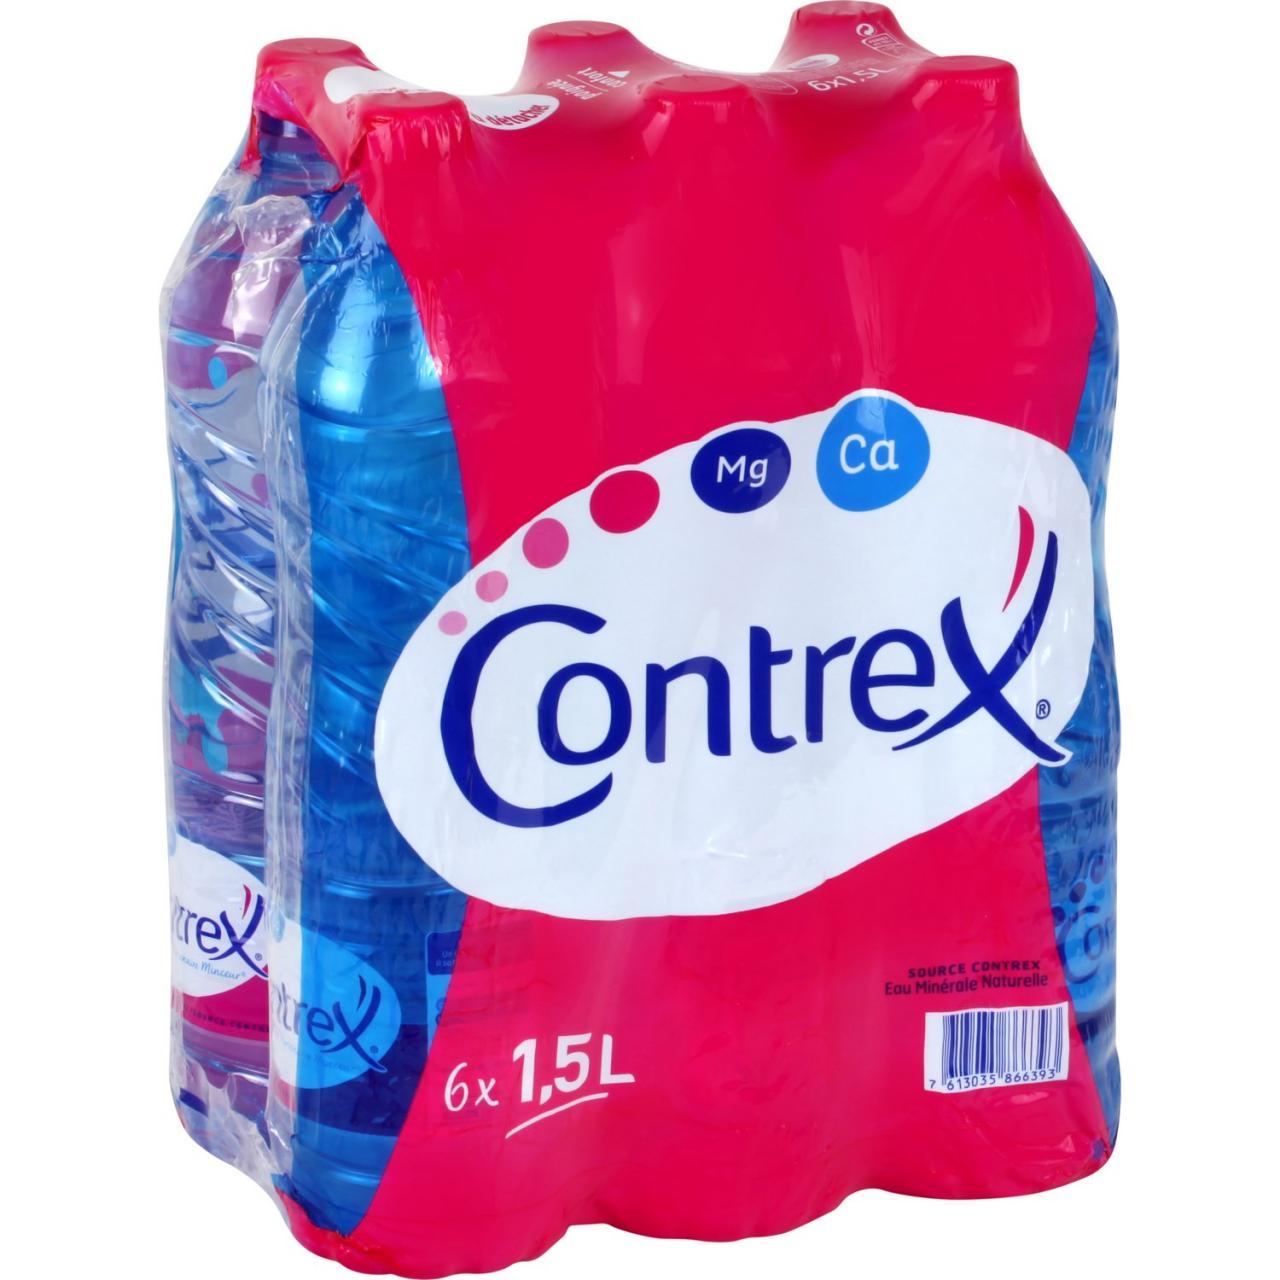 CONTREX 6 X 150CL PET